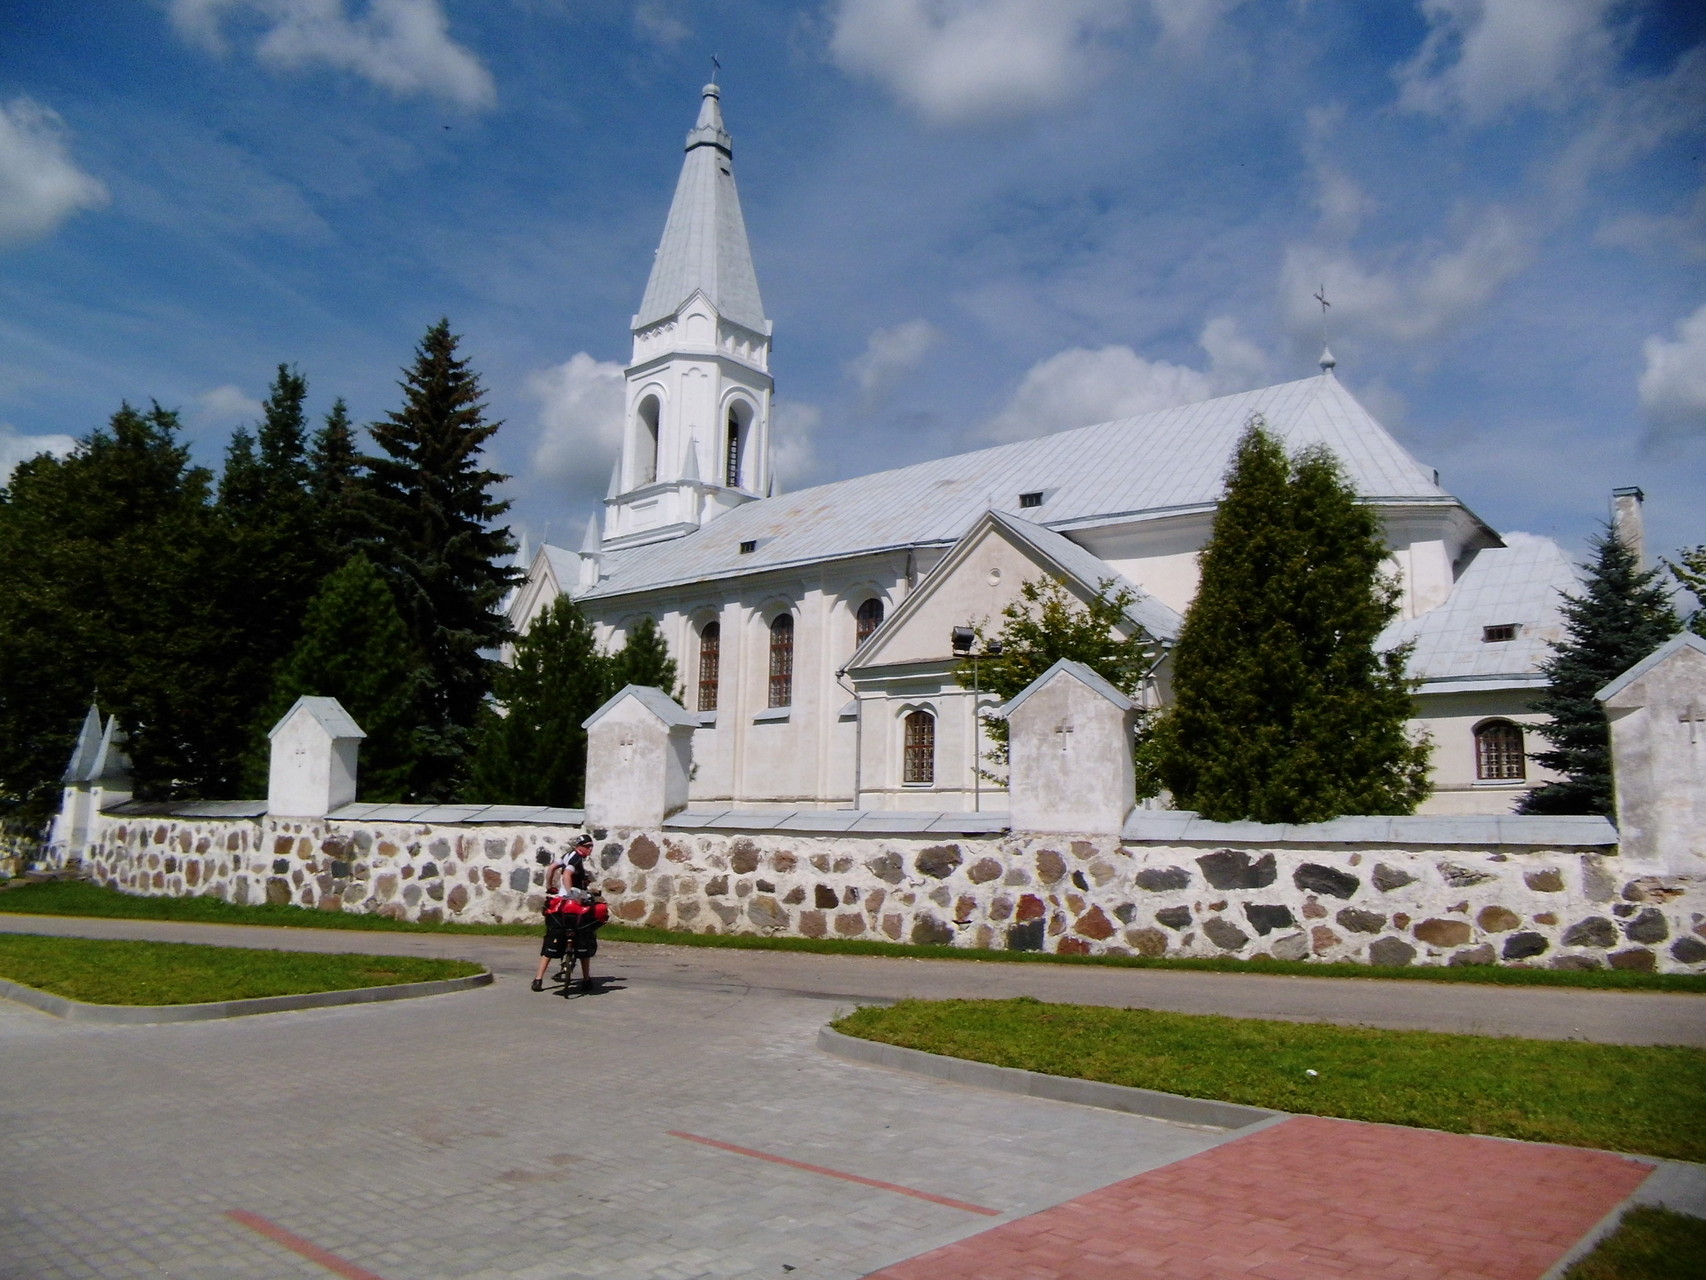 Wunderschöne Kirche in Weiß